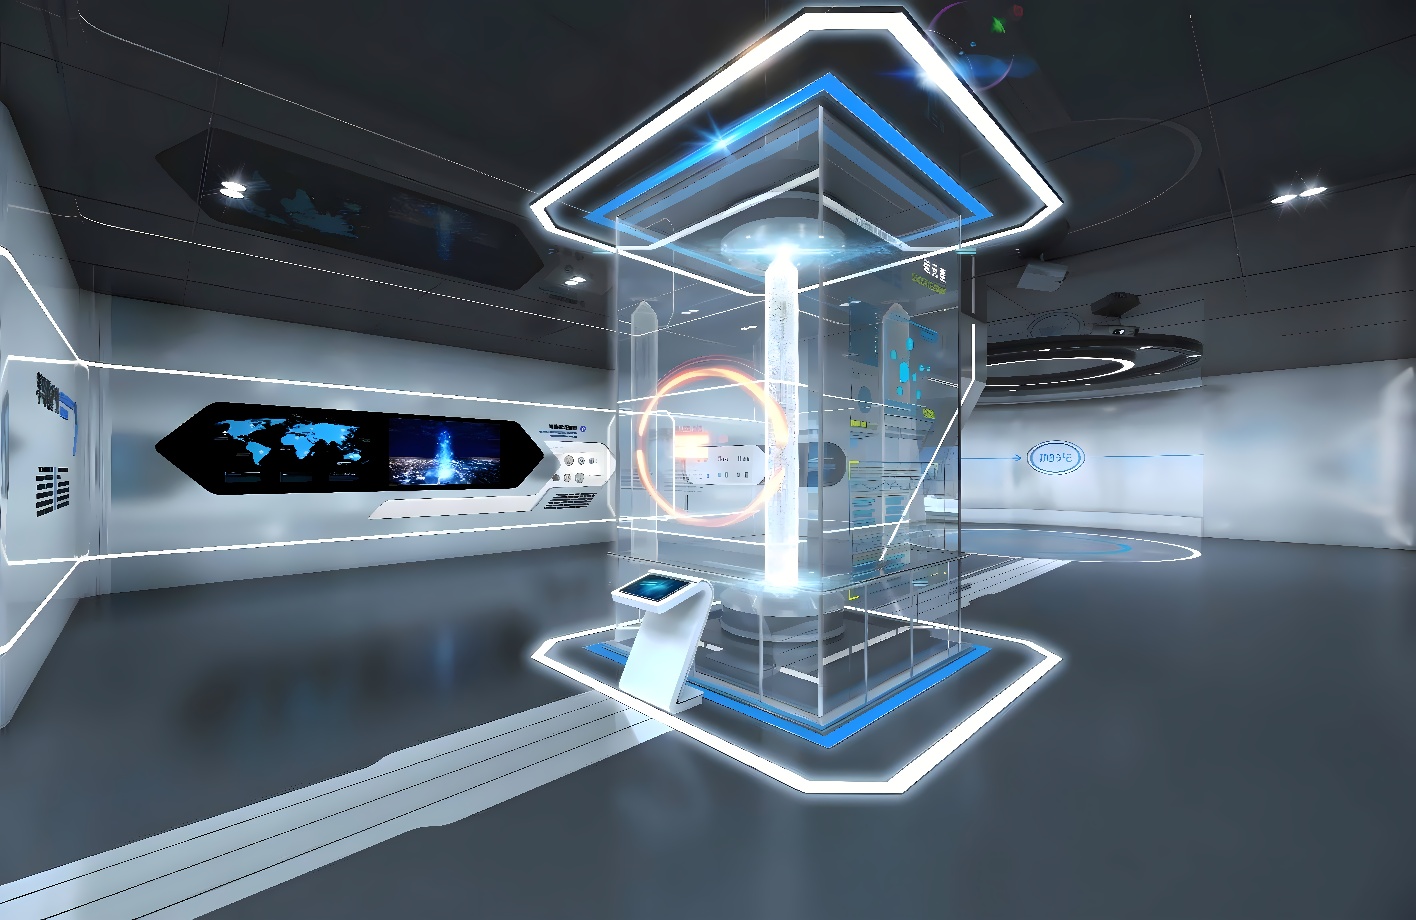 这是一张展示现代科技感室内设计的图片，中心有发光的立体结构，墙上有屏幕，整体色调偏冷，未来风格十足。